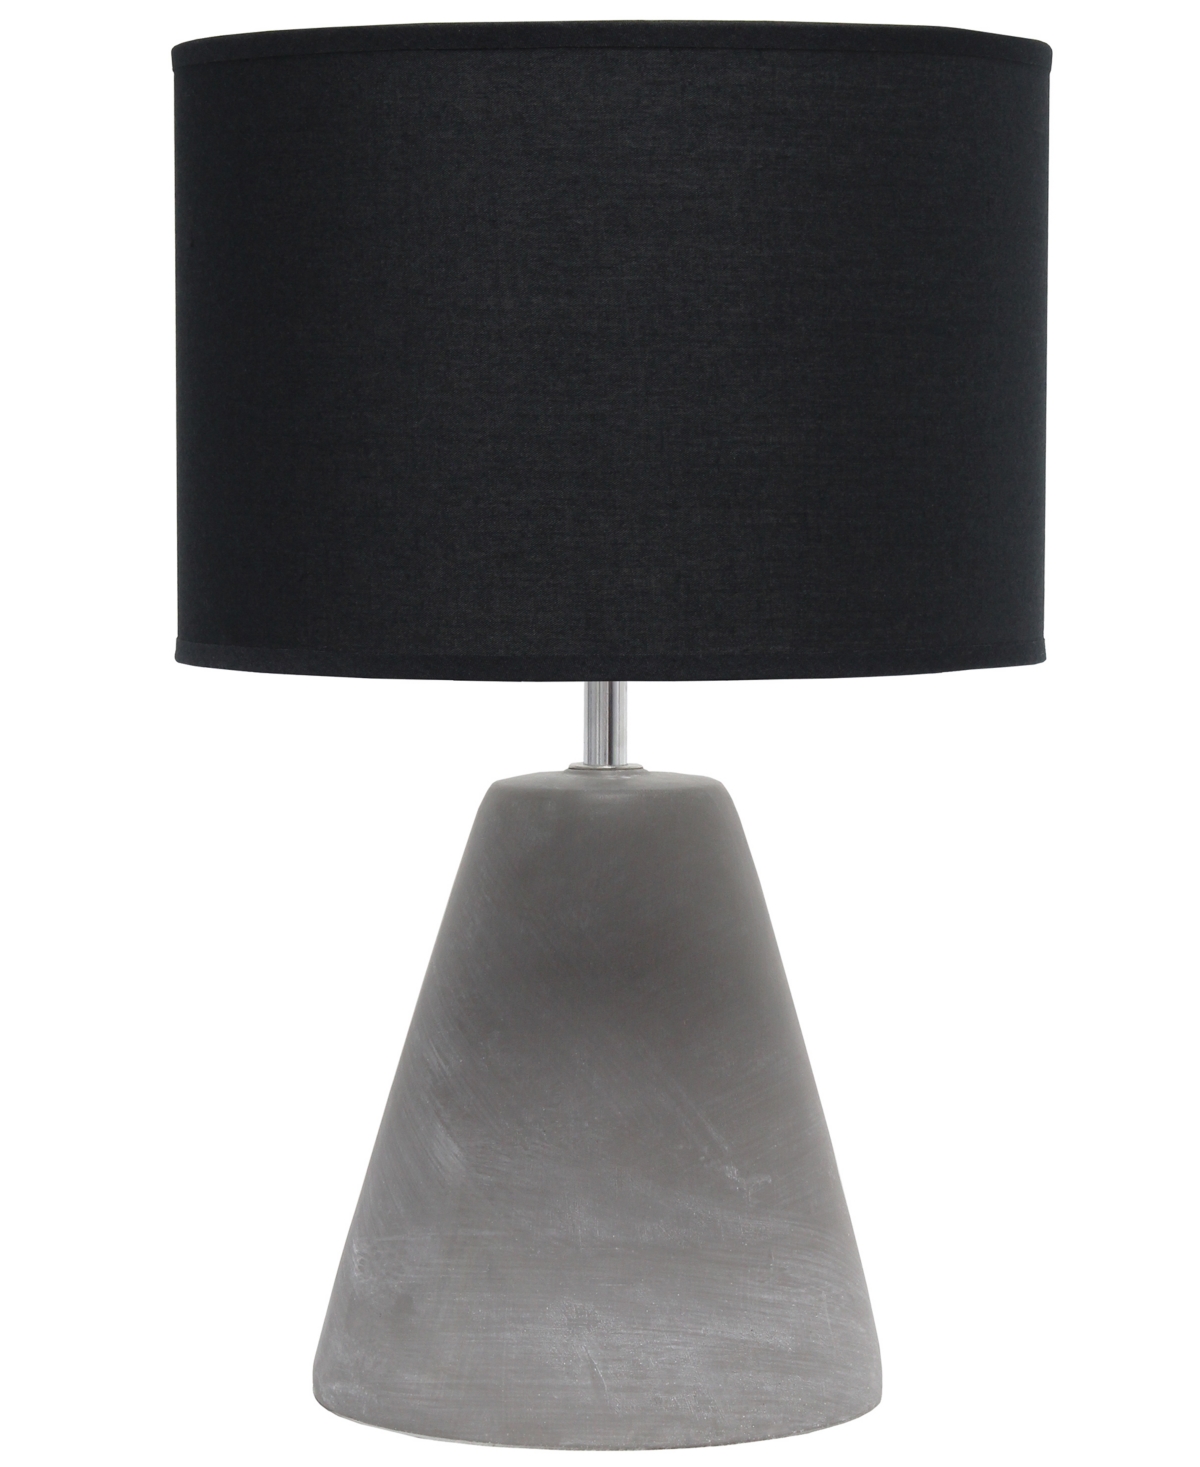 Simple Designs Pinnacle Concrete Table Lamp In Black